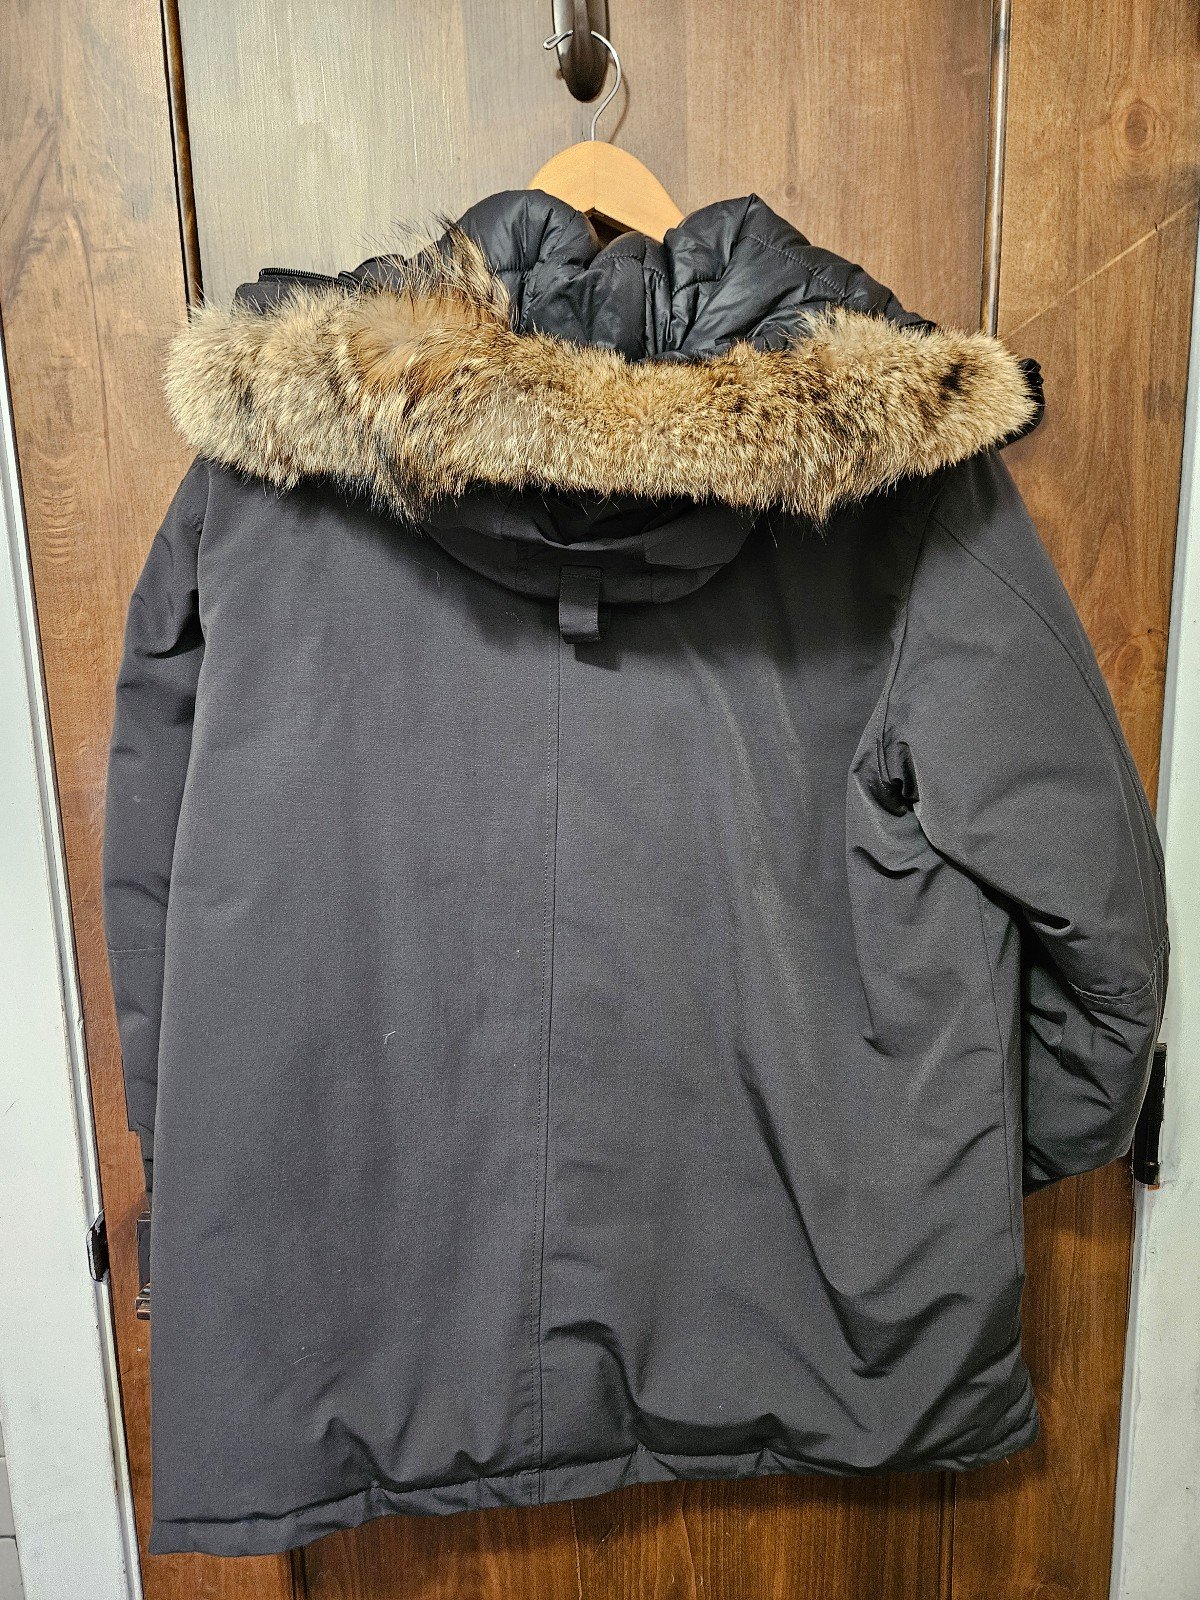 Hawke Co Black Pro XL down filled coat parka real fur 4wgW9O2GX